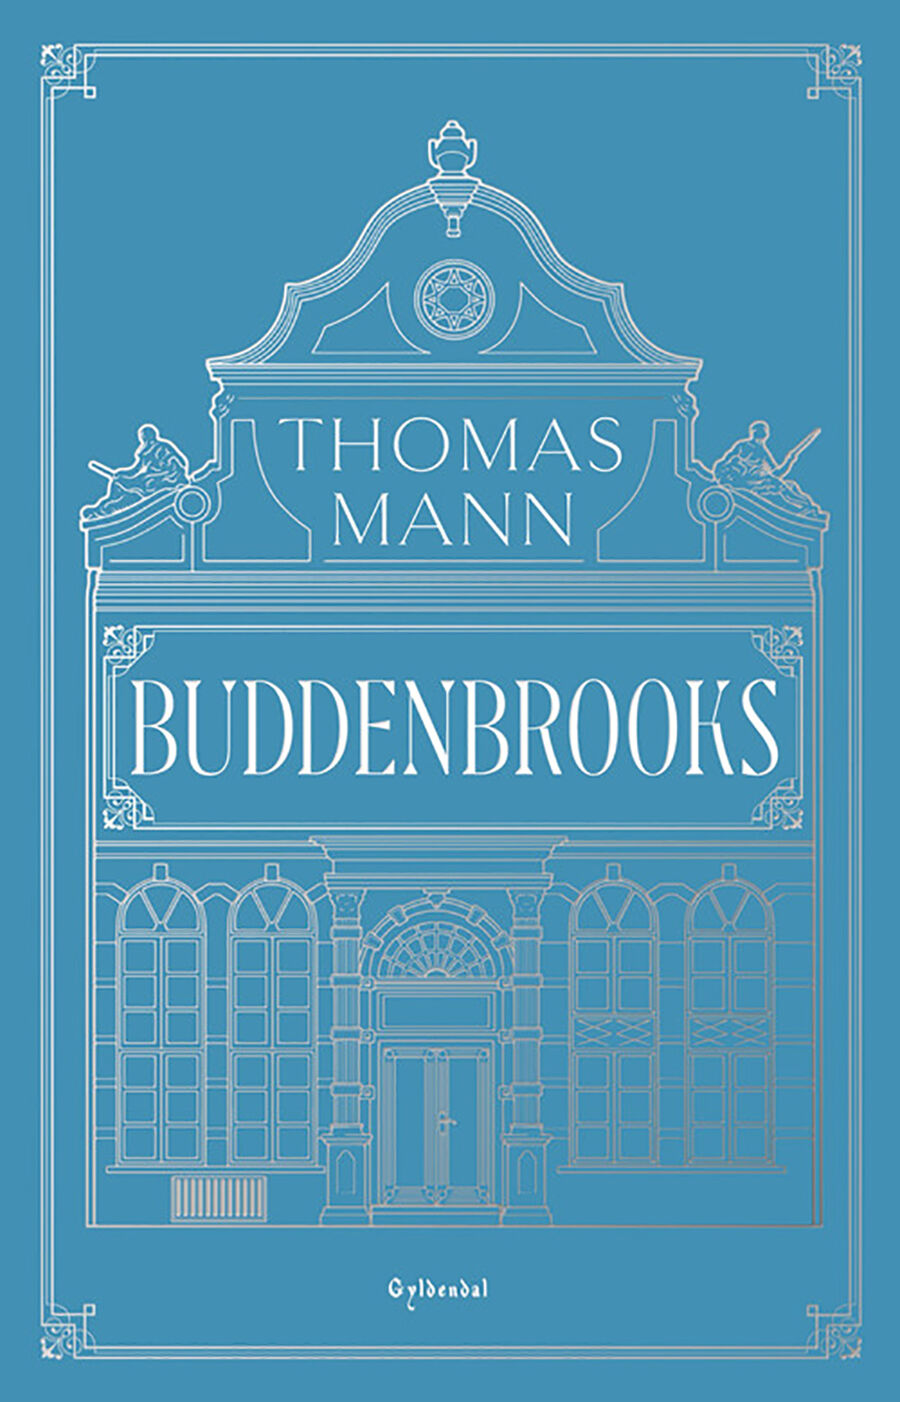 Vi inspirerer: Maries yndlingsbøger i 2020 - 'Buddenbrooks'